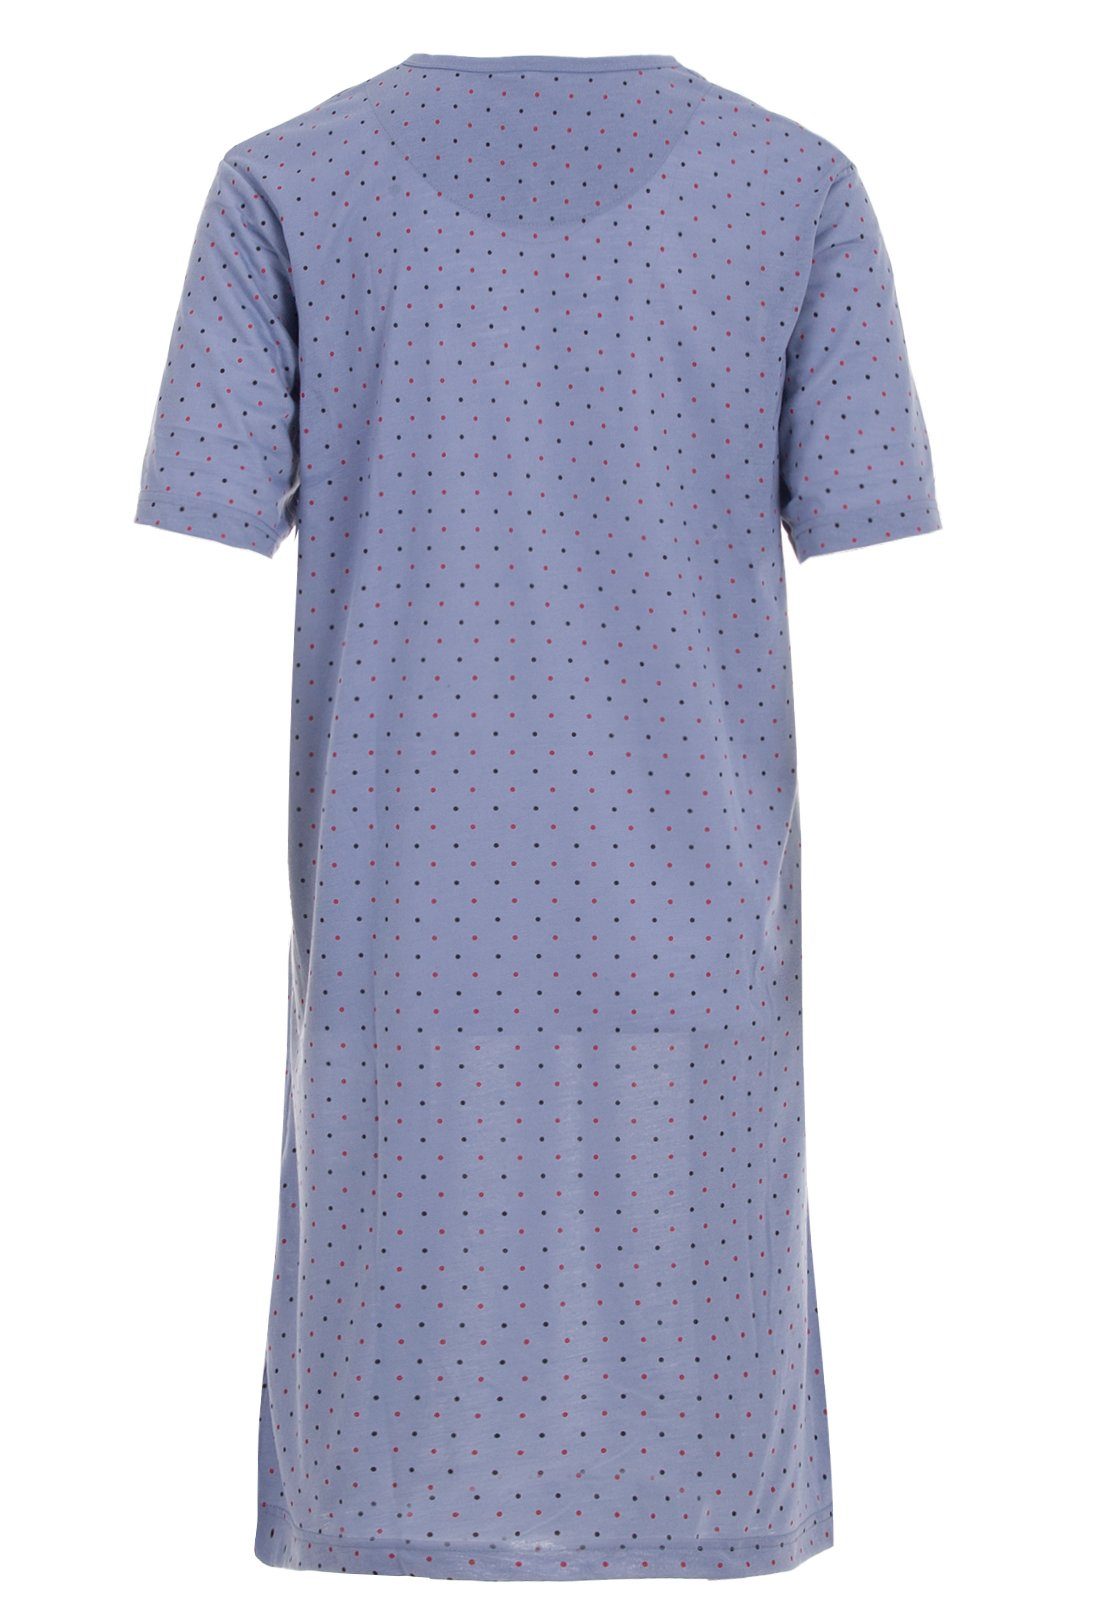 Lucky Nachthemd Nachthemd Kurzarm - Punkte mit Knopfleiste graublau